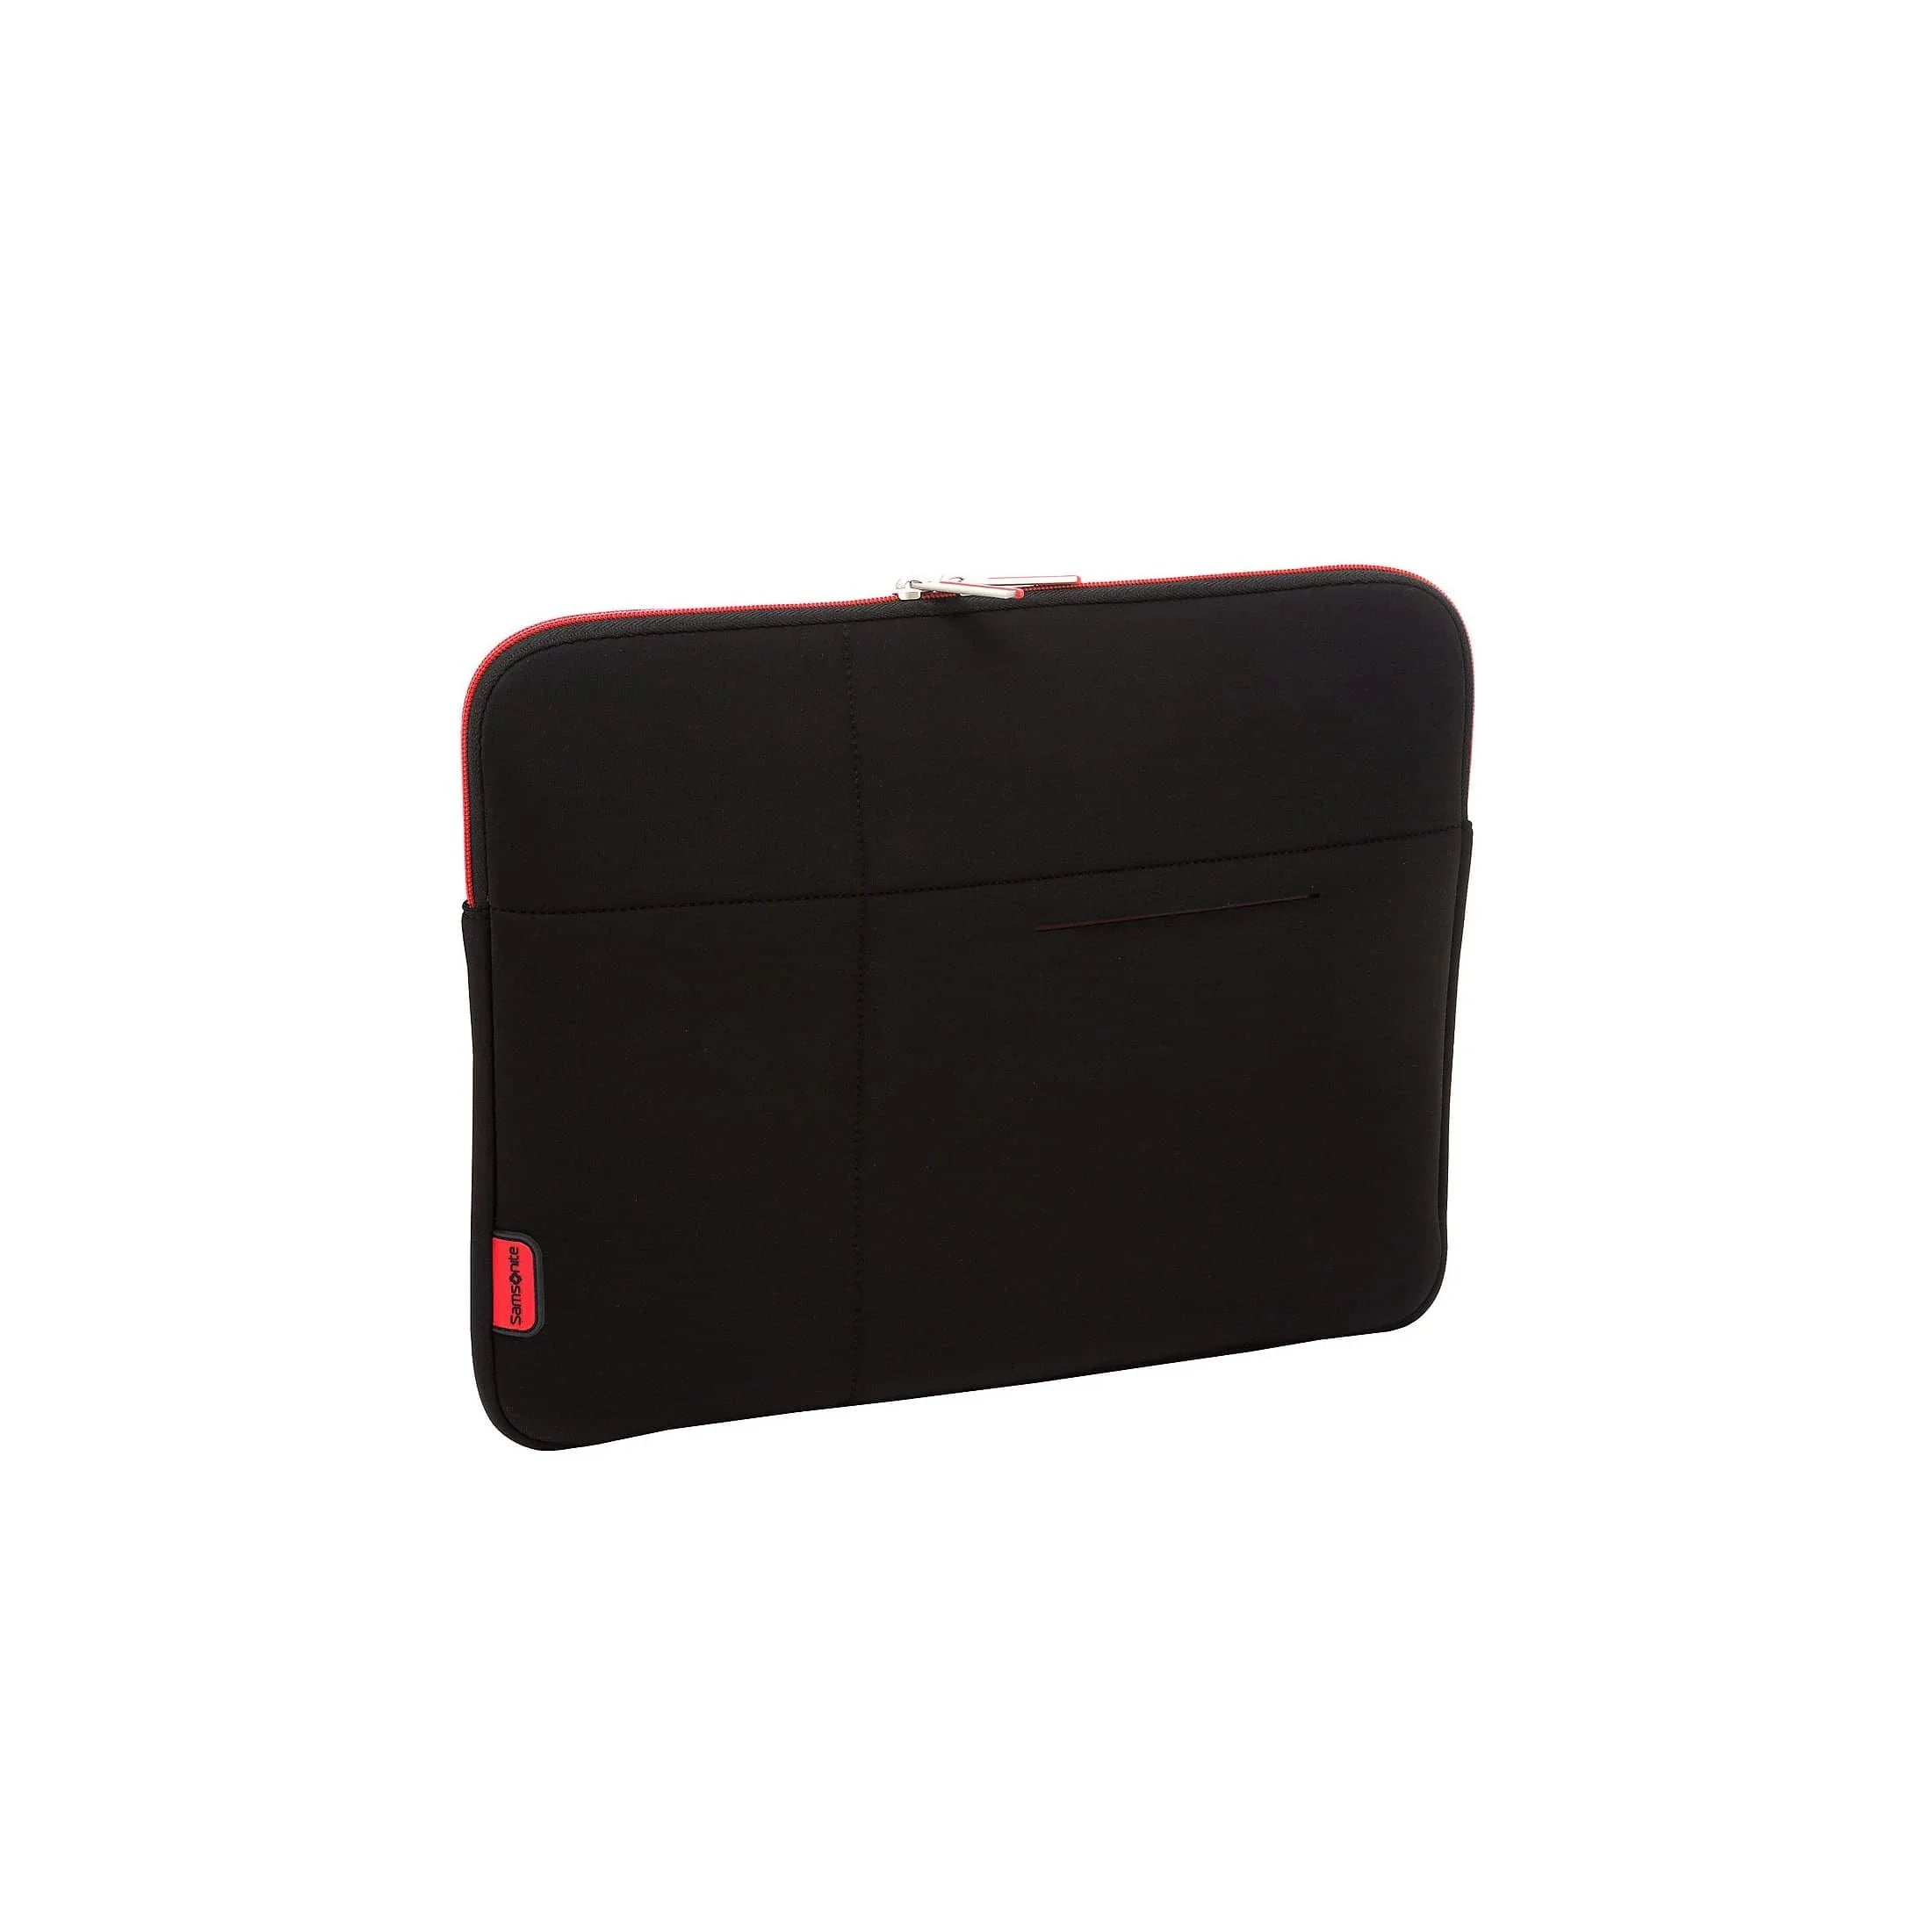 Samsonite Airglow laptop sleeve 33 cm - black/red